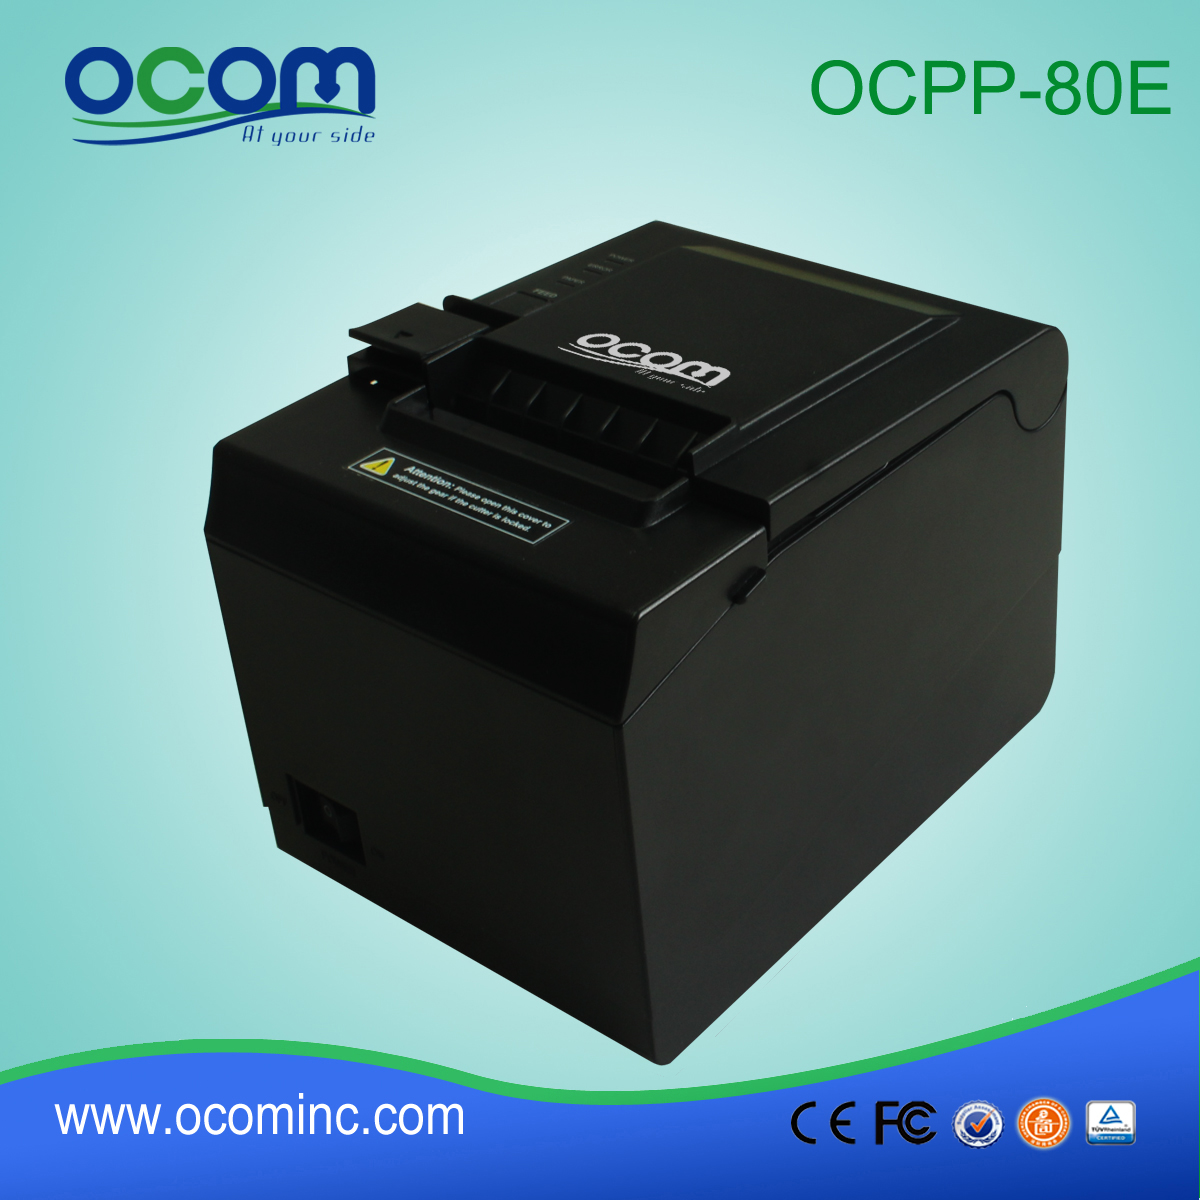 ОКПП-80Е 3 дюйма, Билль о POS-терминале прямой температурный принтер для системы POS